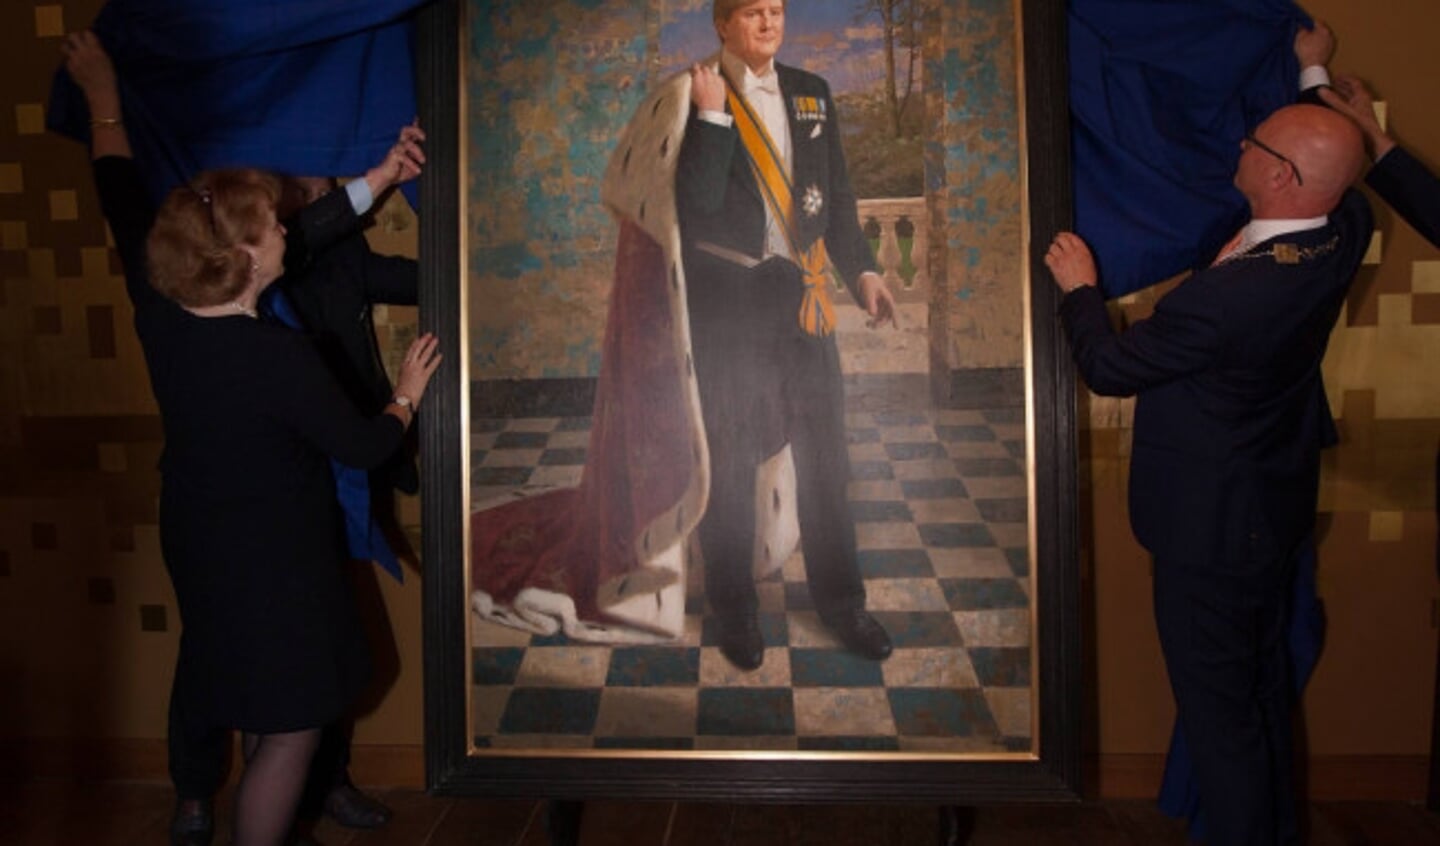  Op 22 april 2016 werd in het Stedelijk Museum Kampen een portret van koning Willem-Alexander onthuld door burgemeester Koelewijn en mevrouw Spliethoff